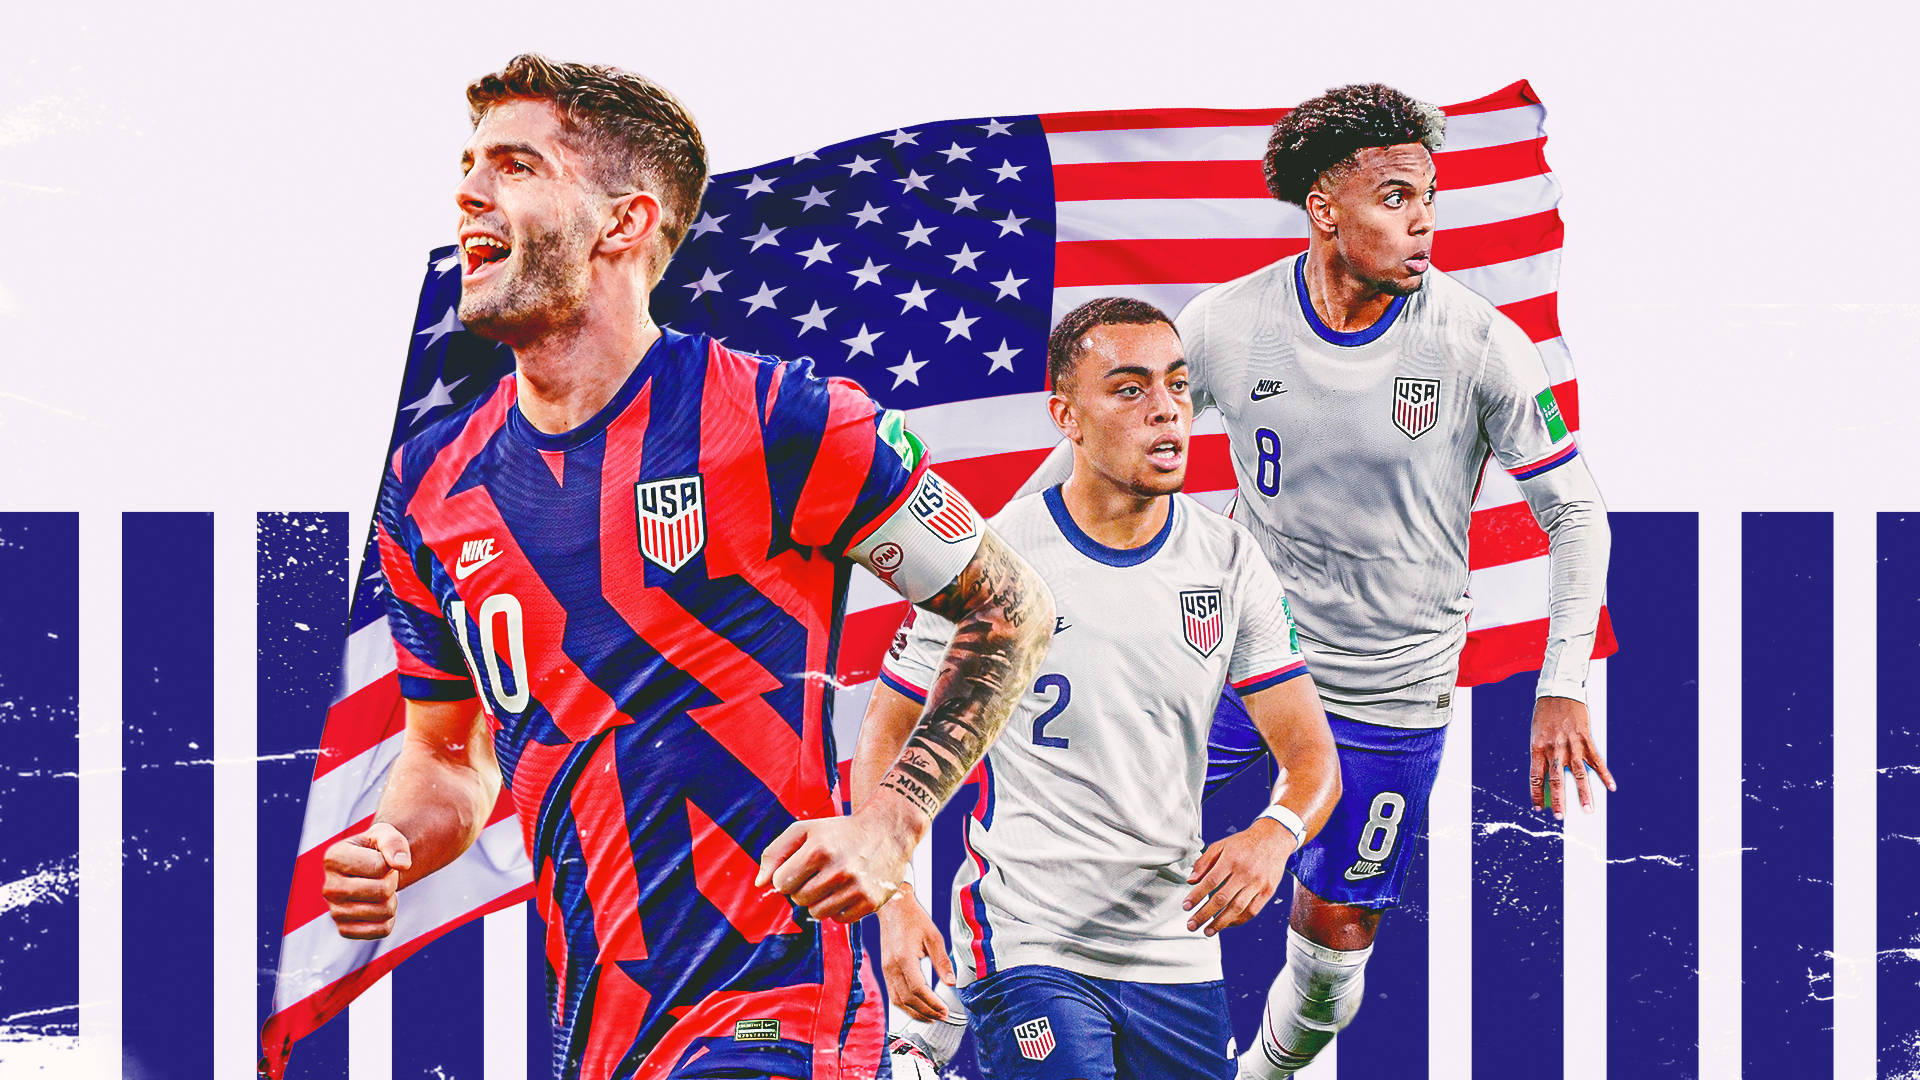 USA National Football Team FIFA World Cup Fanart Wallpaper